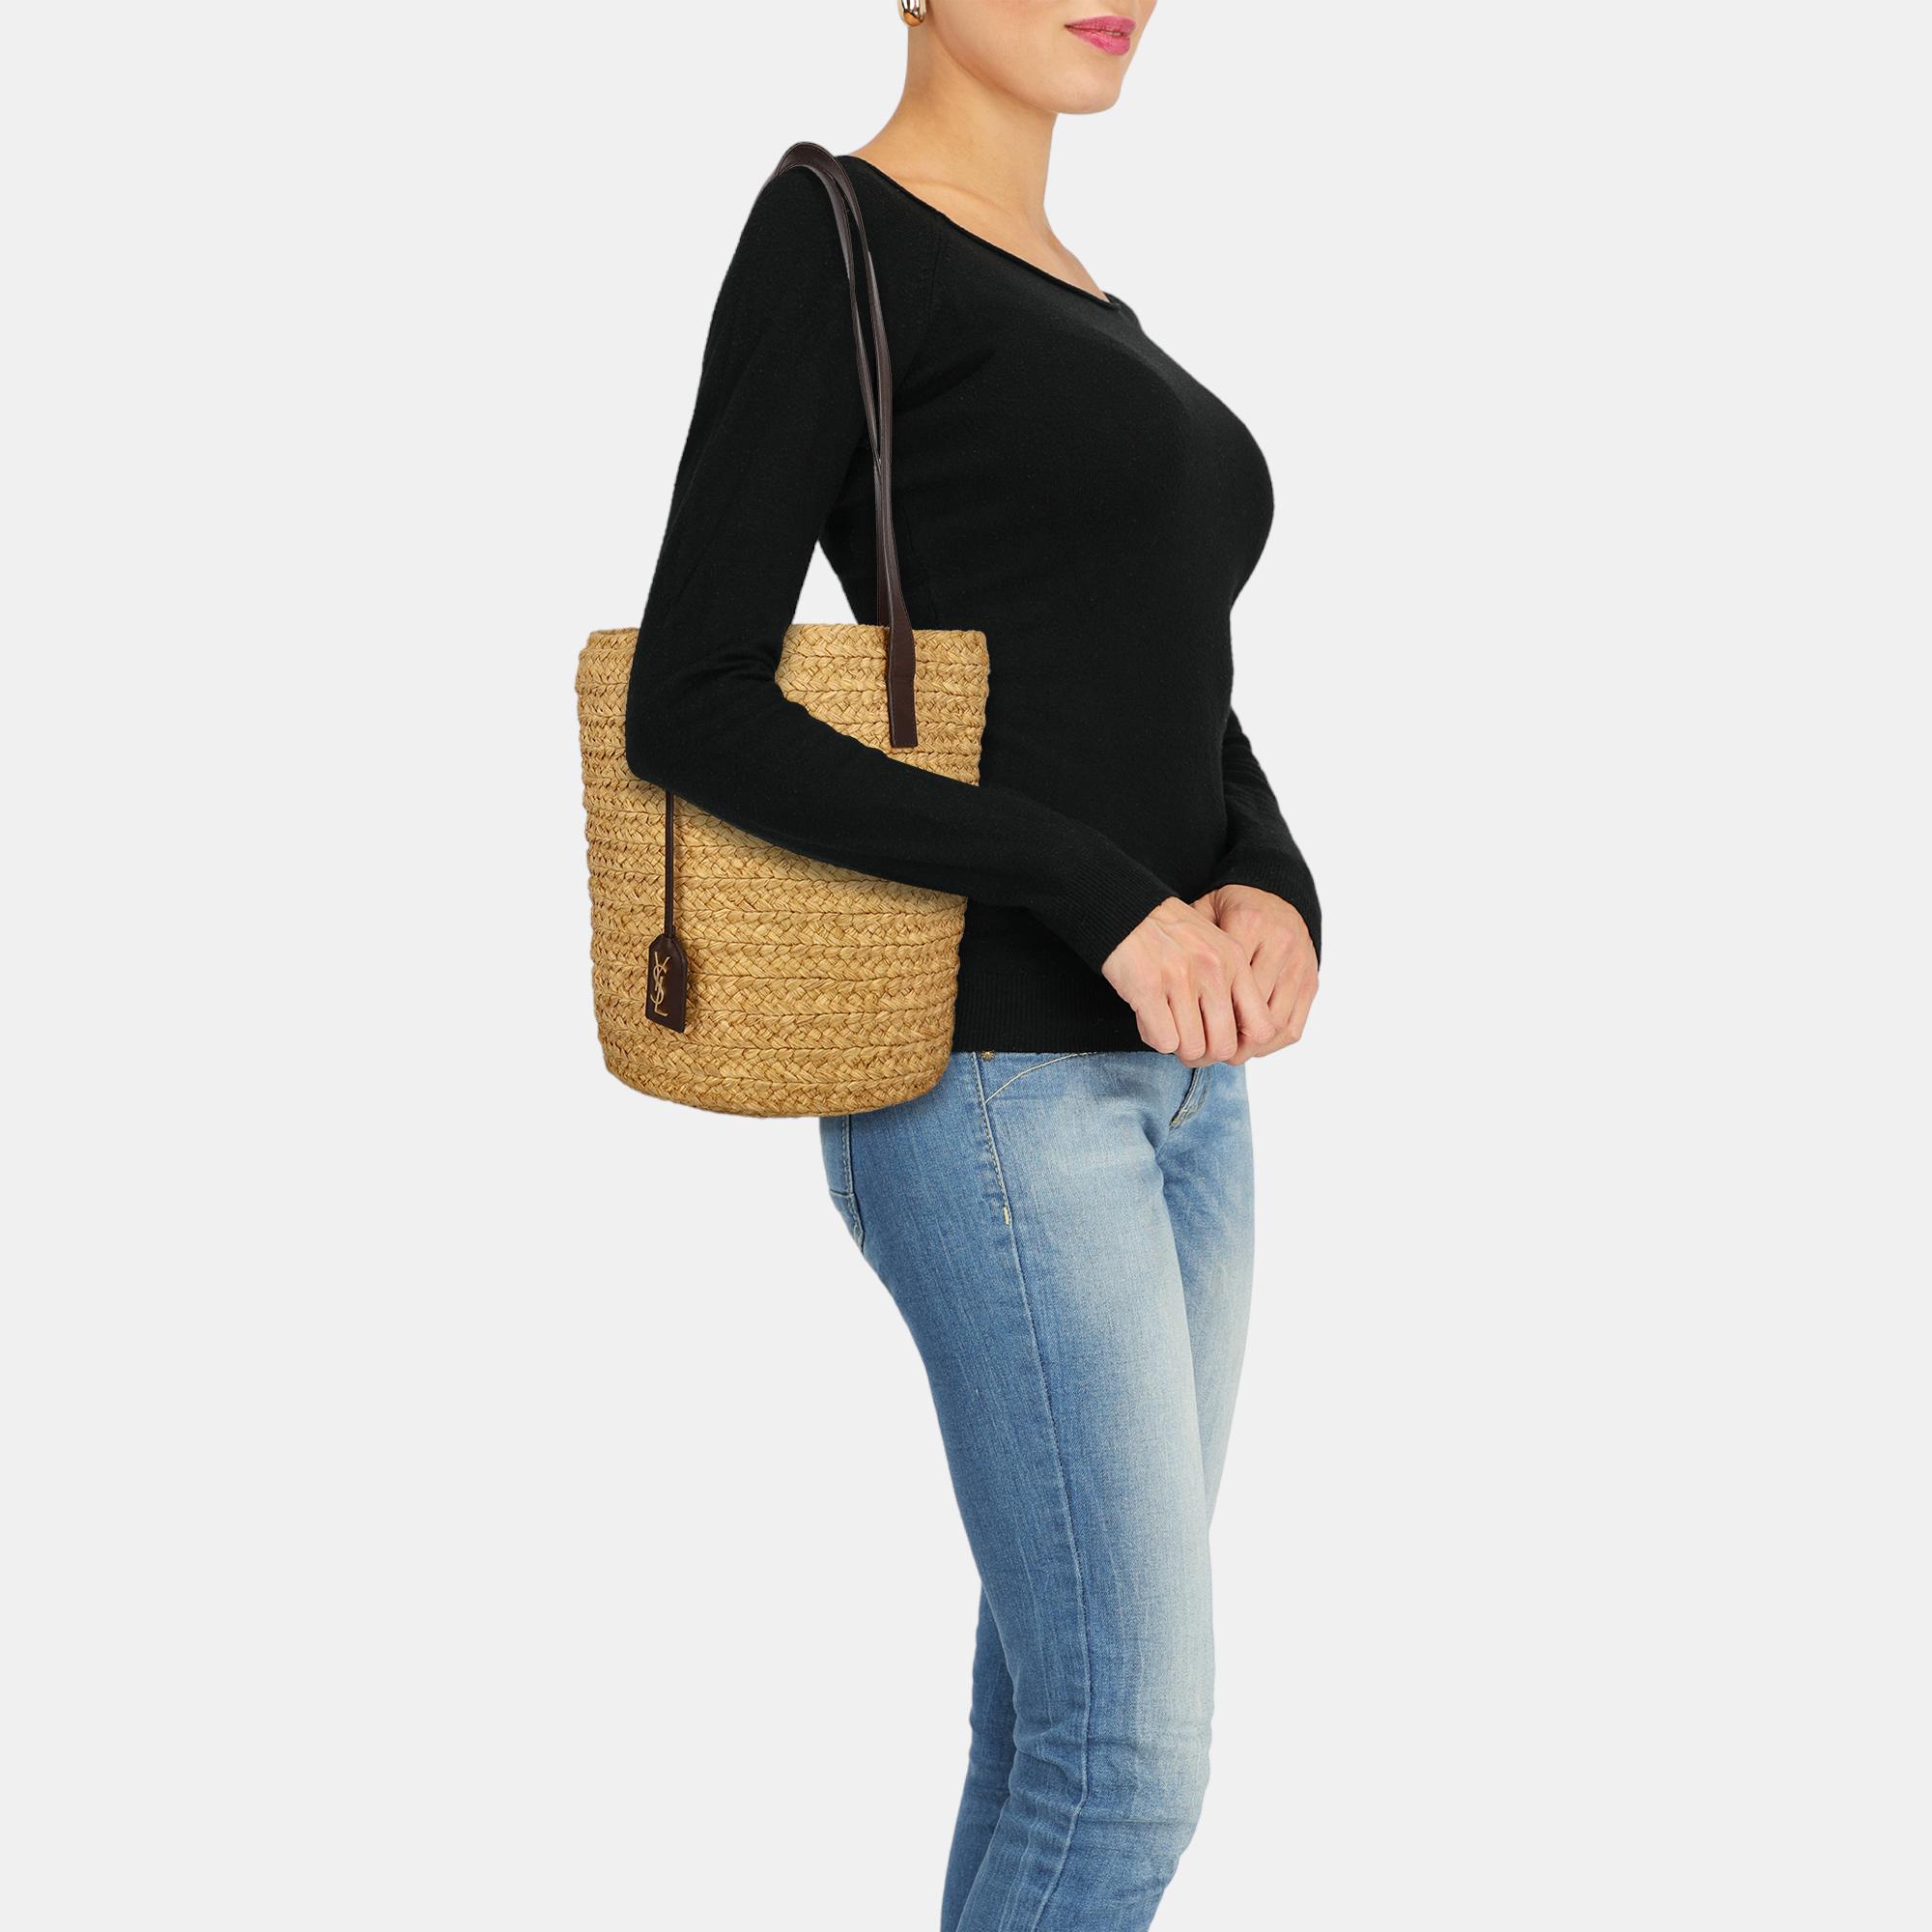 Saint Laurent  Women's Eco-Friendly Fabric Shoulder Bag - Beige - One Size